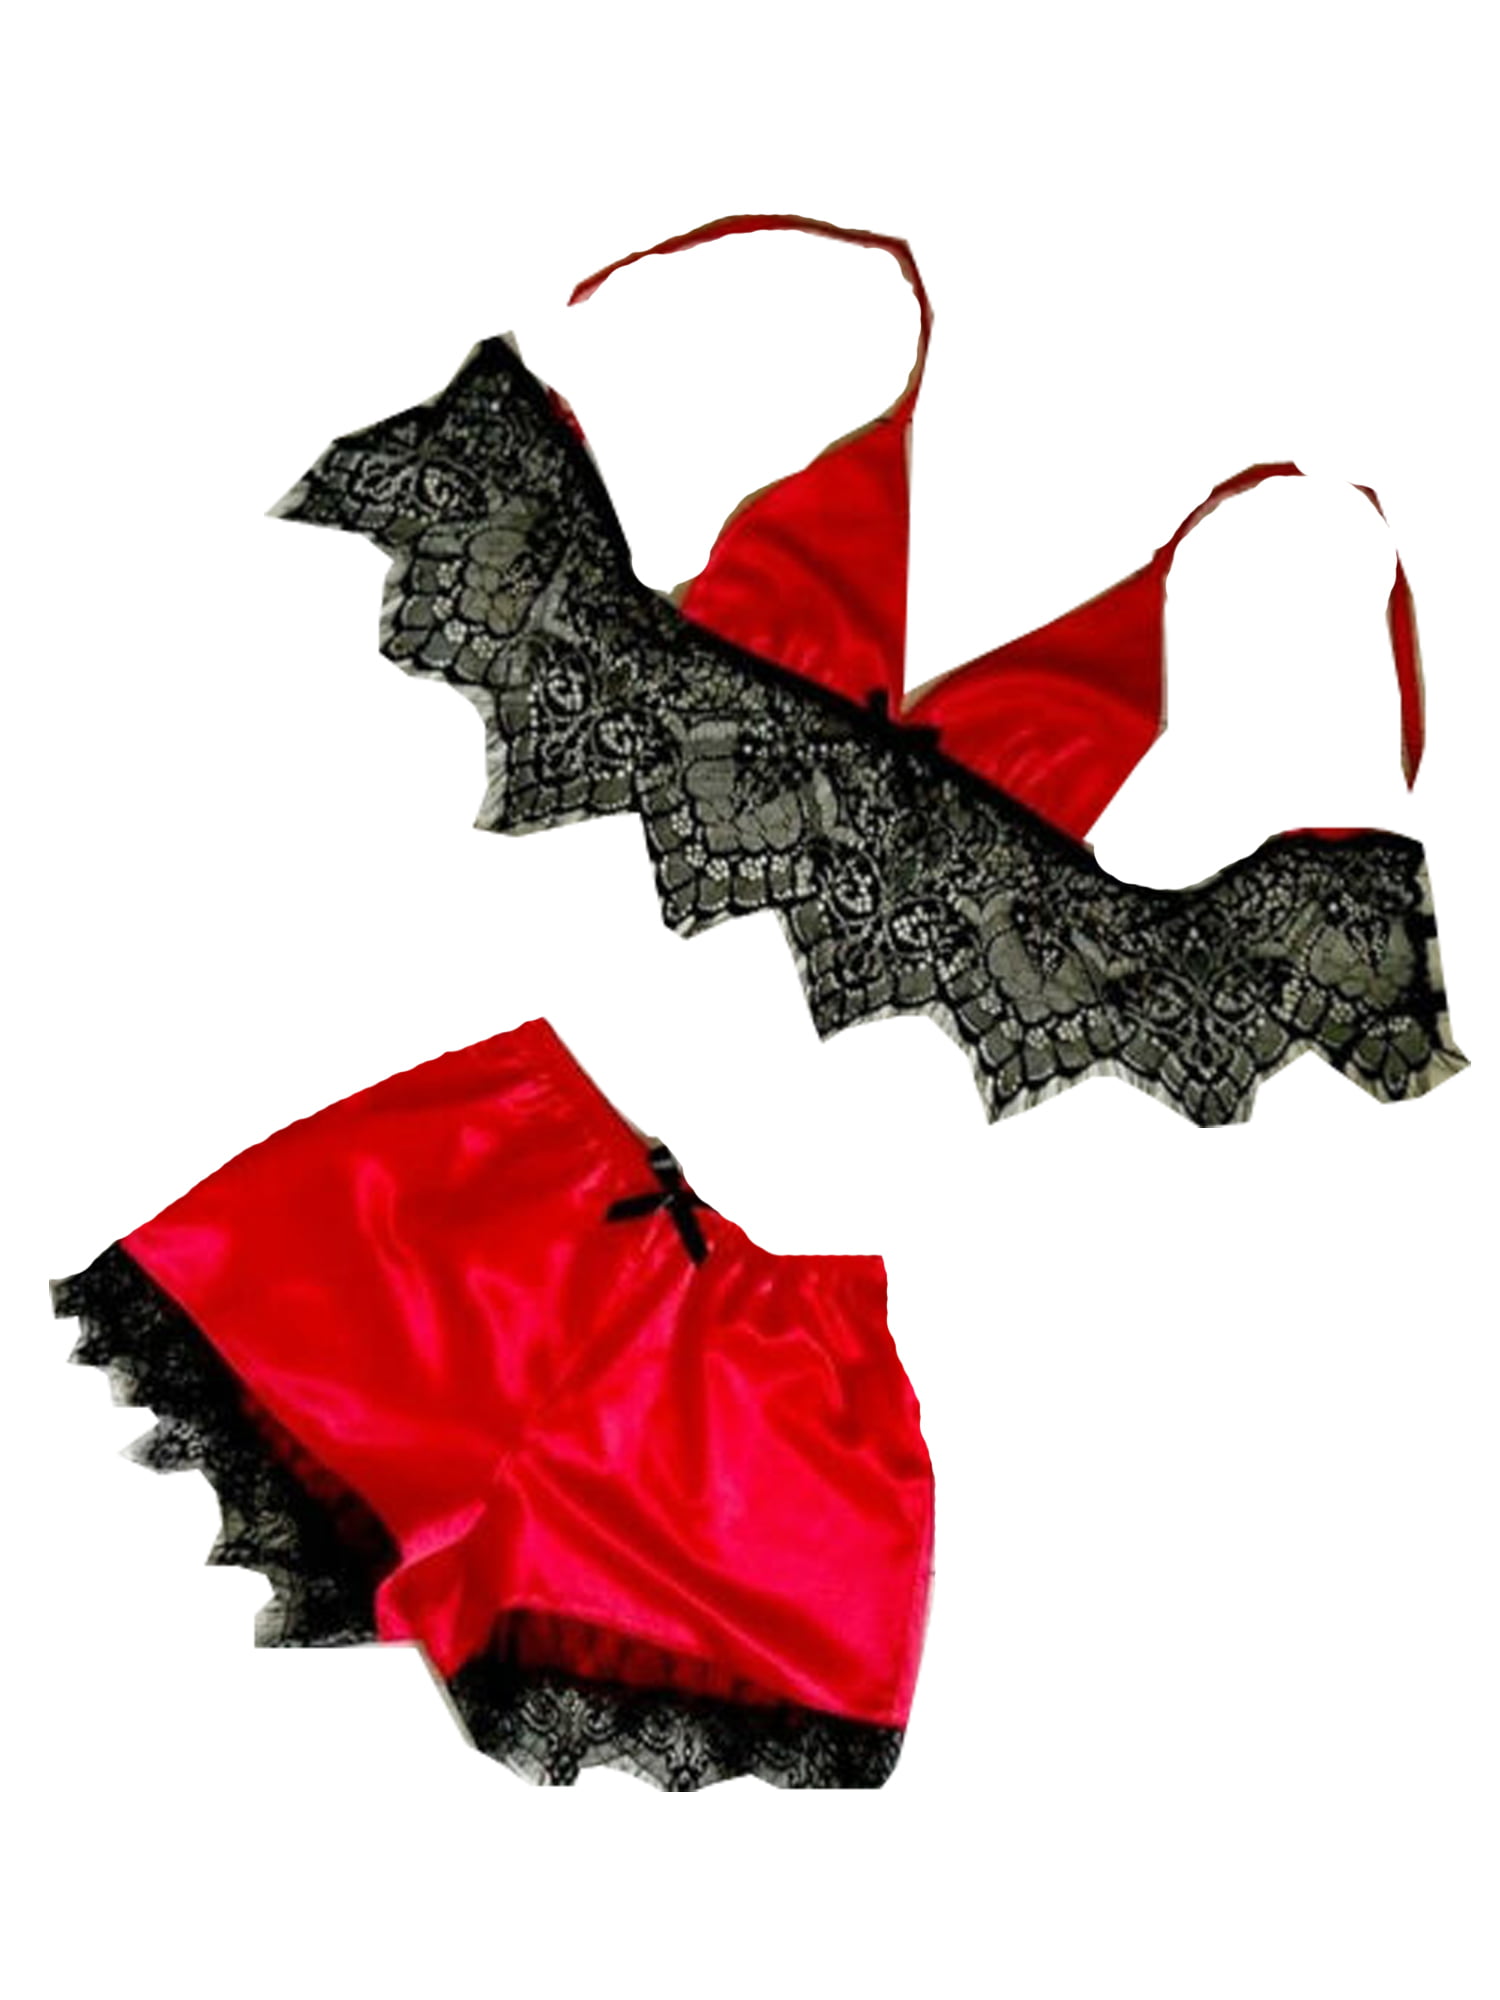 Karuedoo 1 Set Lingerie Women Lace Bra Underwear Satin Silk G String